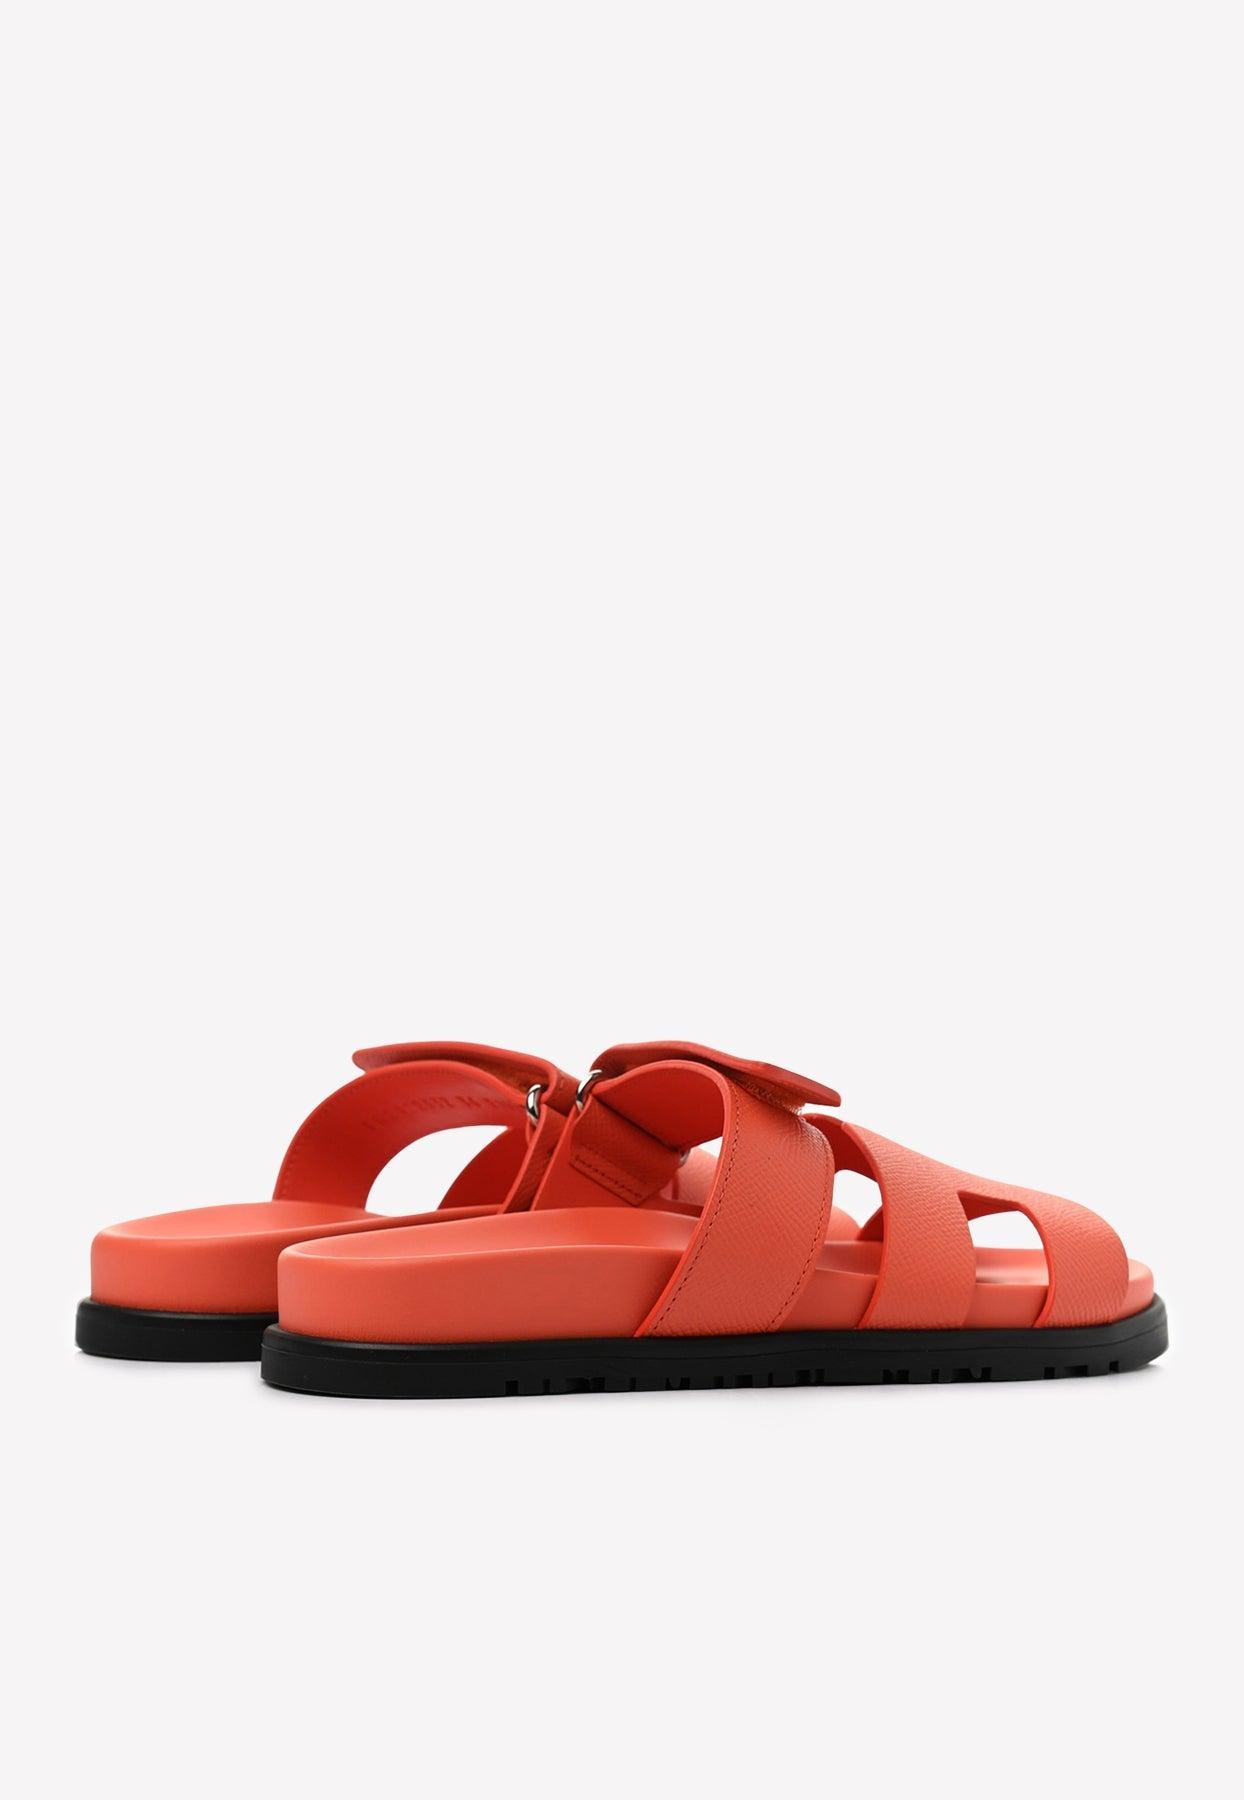 Hermès Chypre Sandals In Calfskin in Red | Lyst